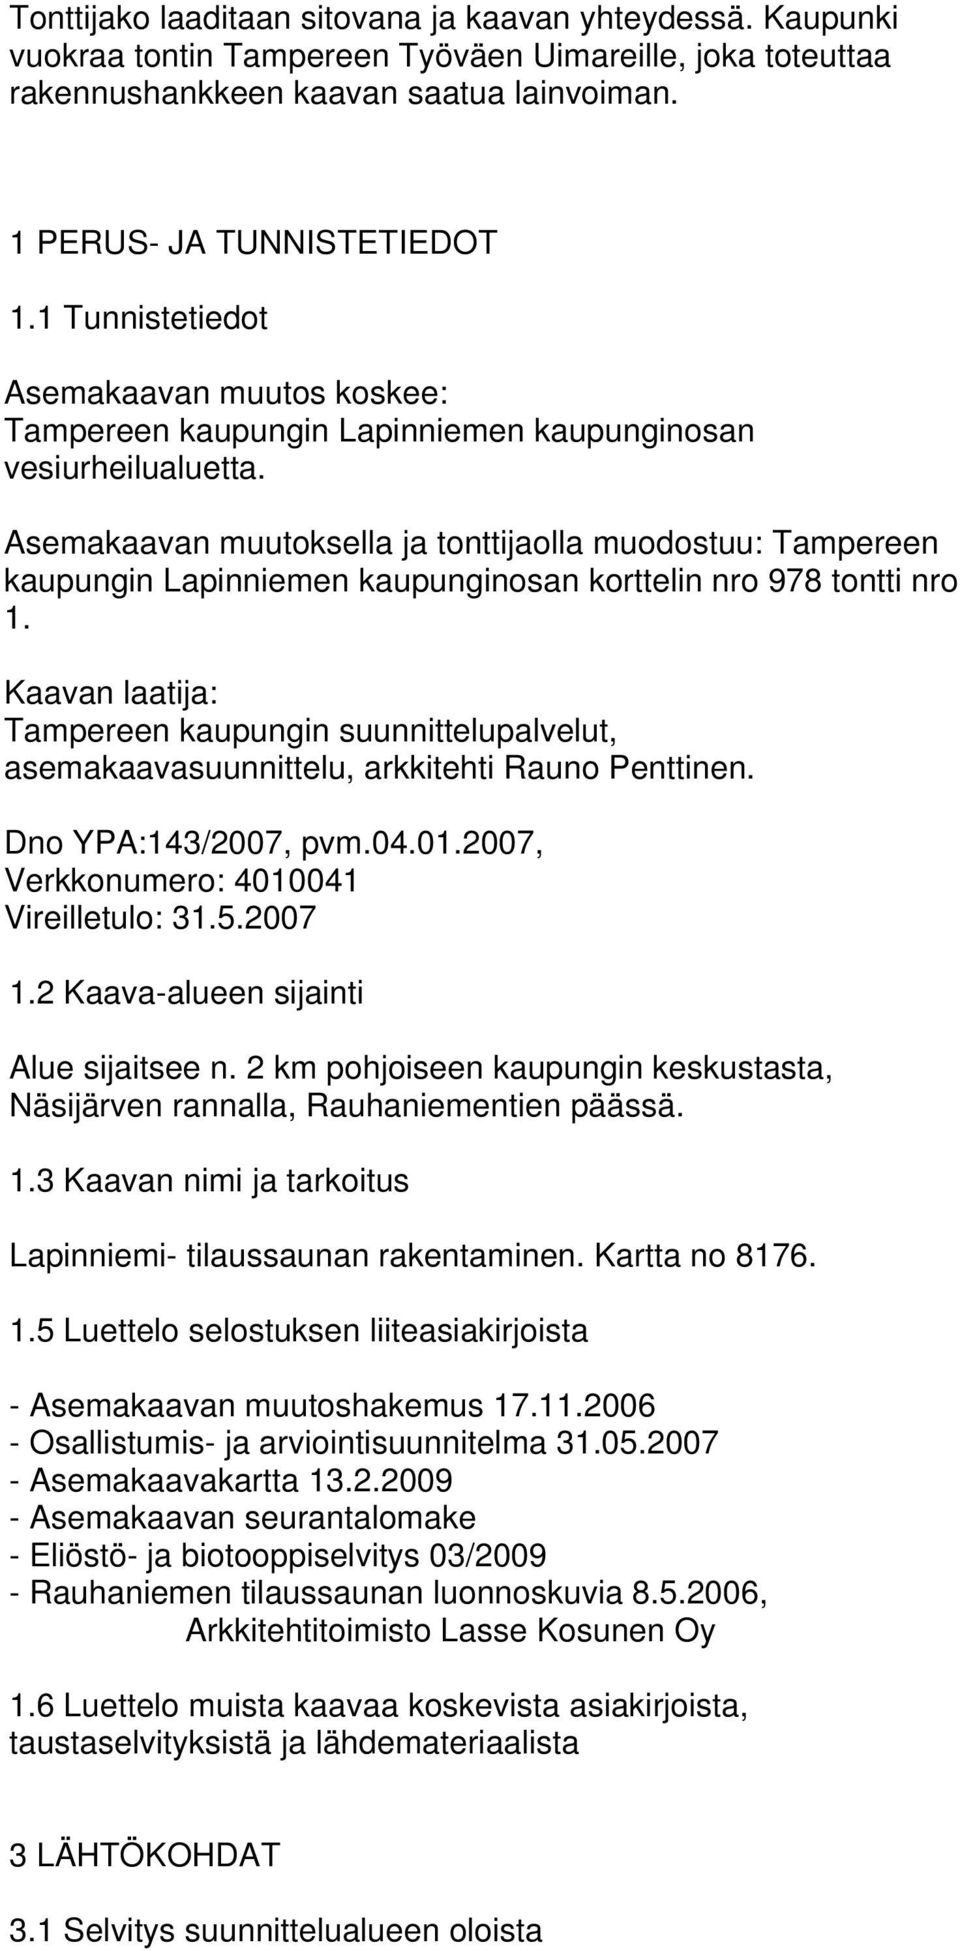 Asemakaavan muutoksella ja tonttijaolla muodostuu: Tampereen kaupungin Lapinniemen kaupunginosan korttelin nro 978 tontti nro 1.